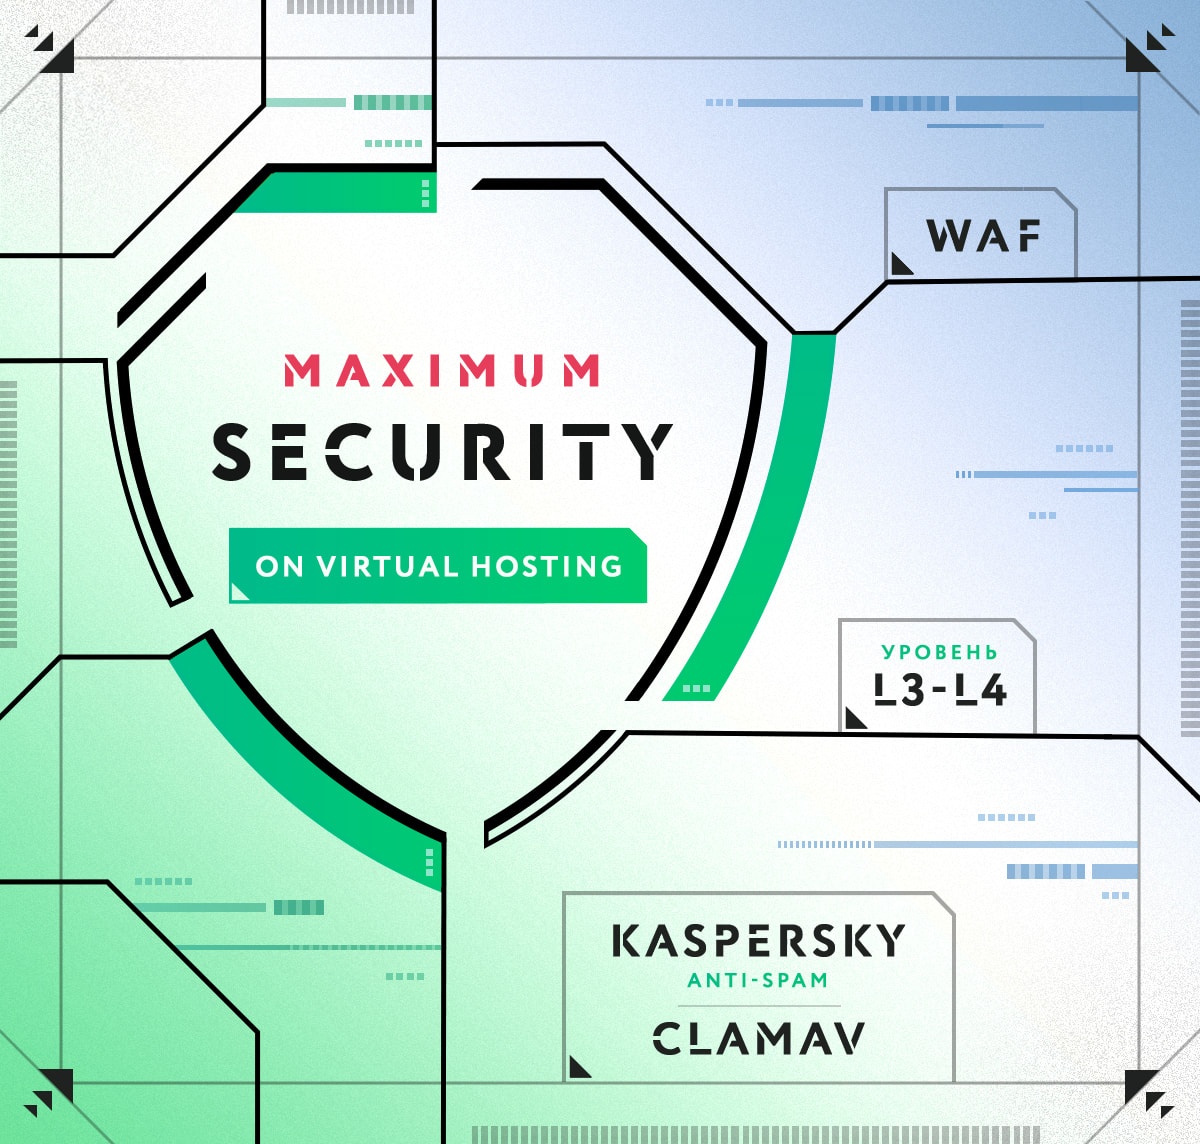 Методы защиты для максимальной безопасности на виртуальном хостинге masterhost